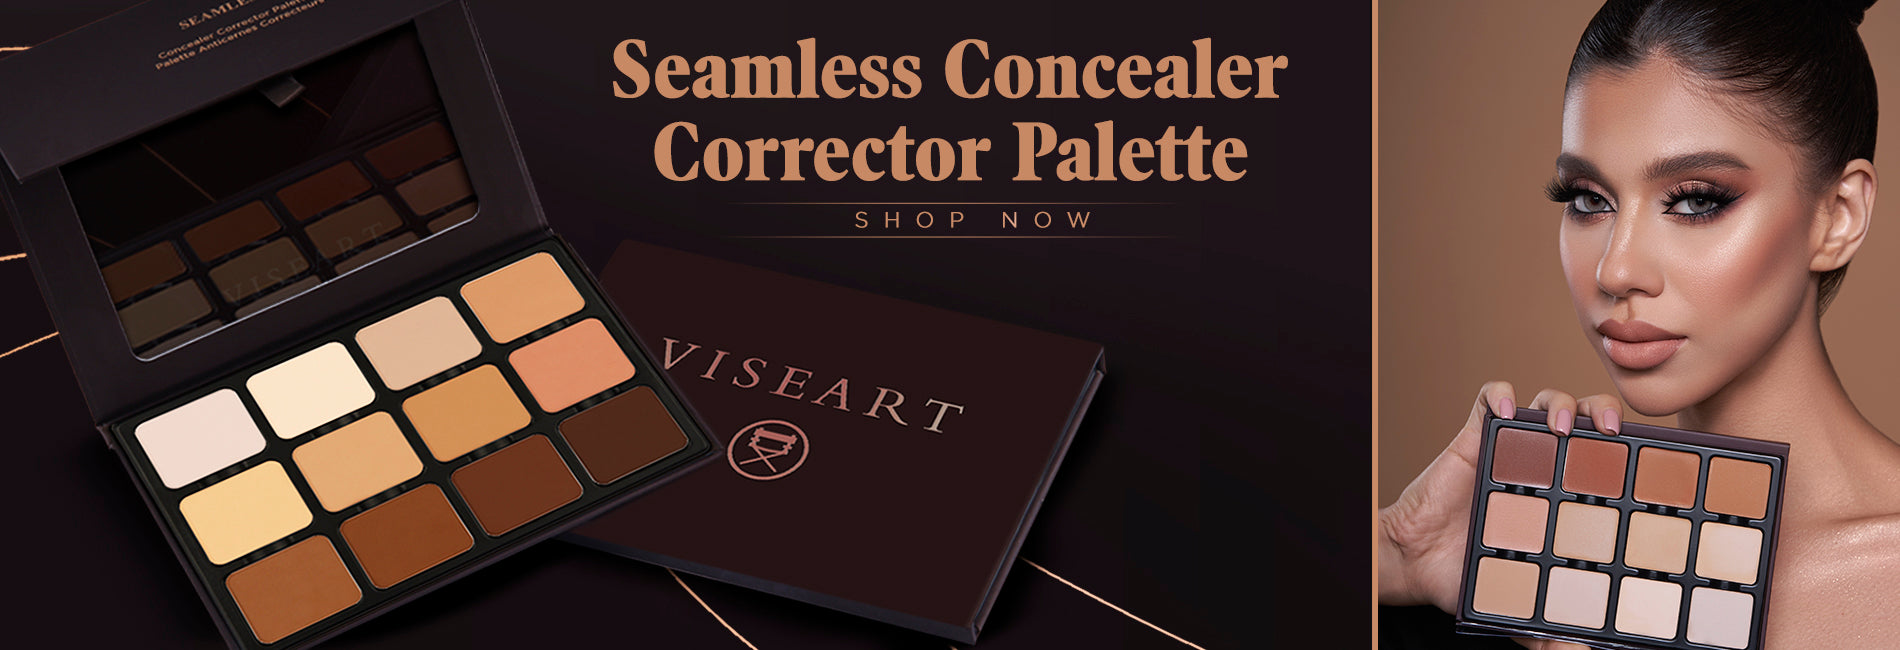 Seamless Concealer Corrector Palette - Viseart